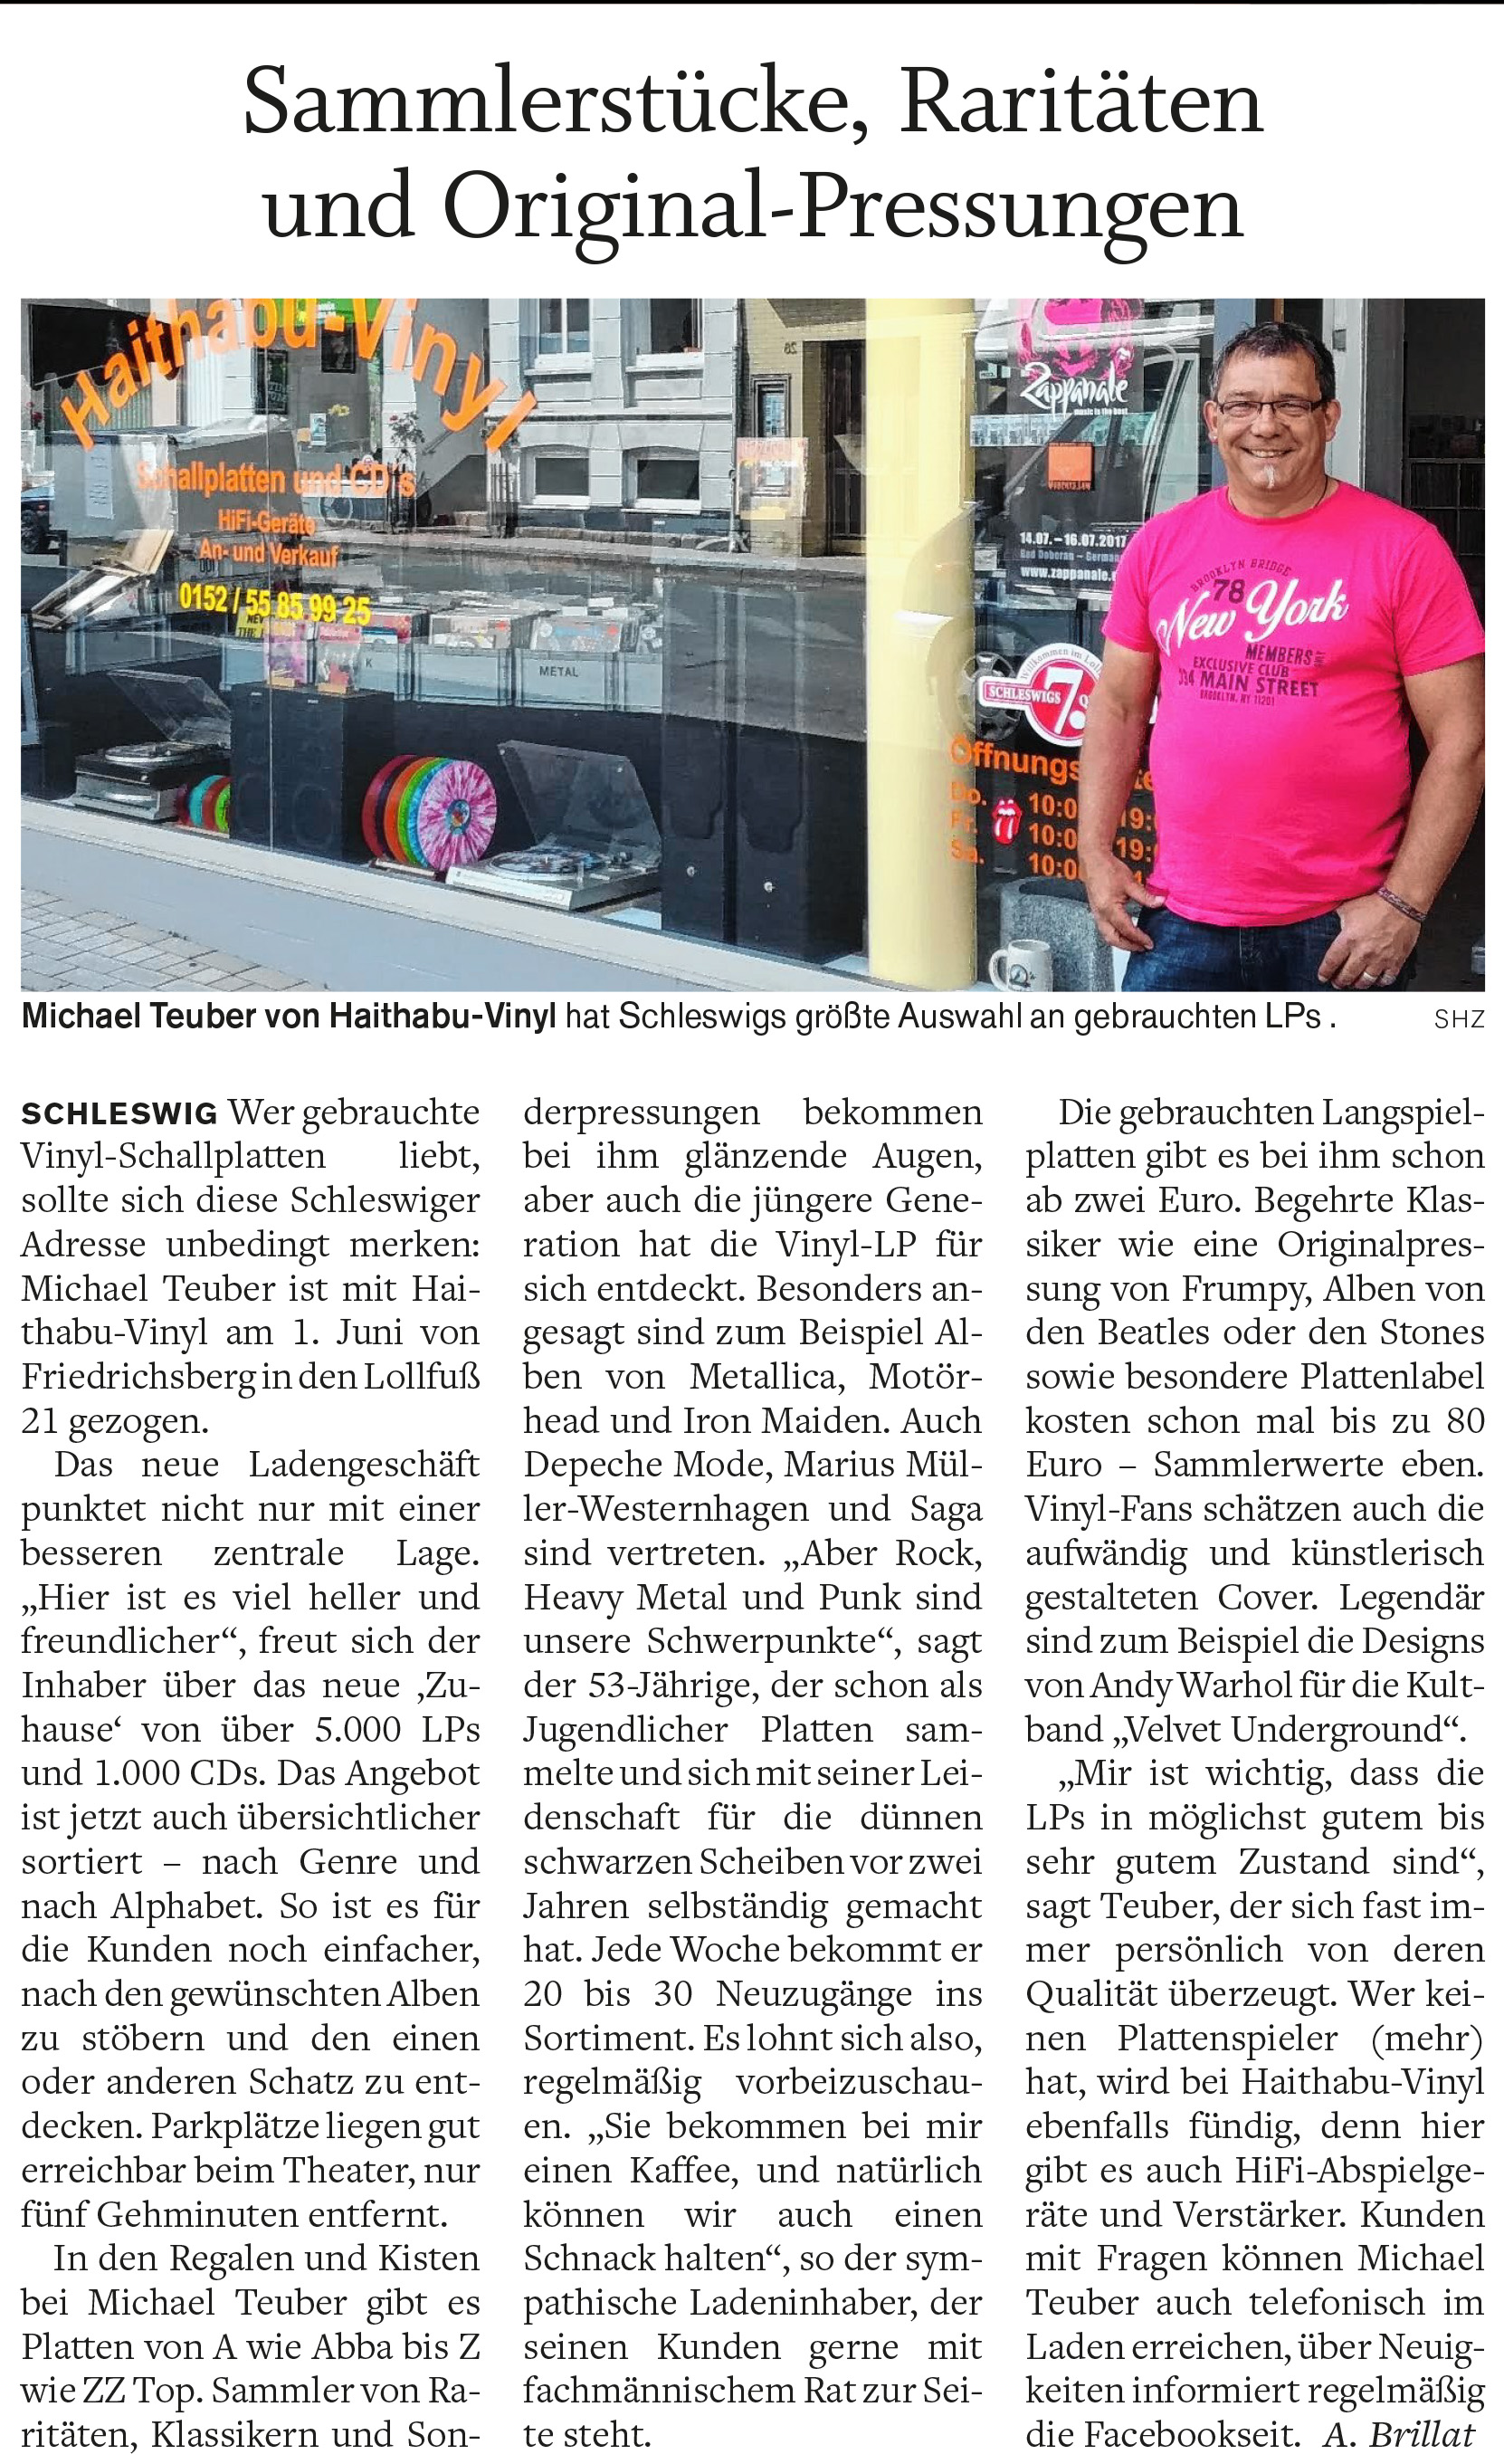 Artikel in den Schleswiger Nachrichten über Haithabu-Vinyl